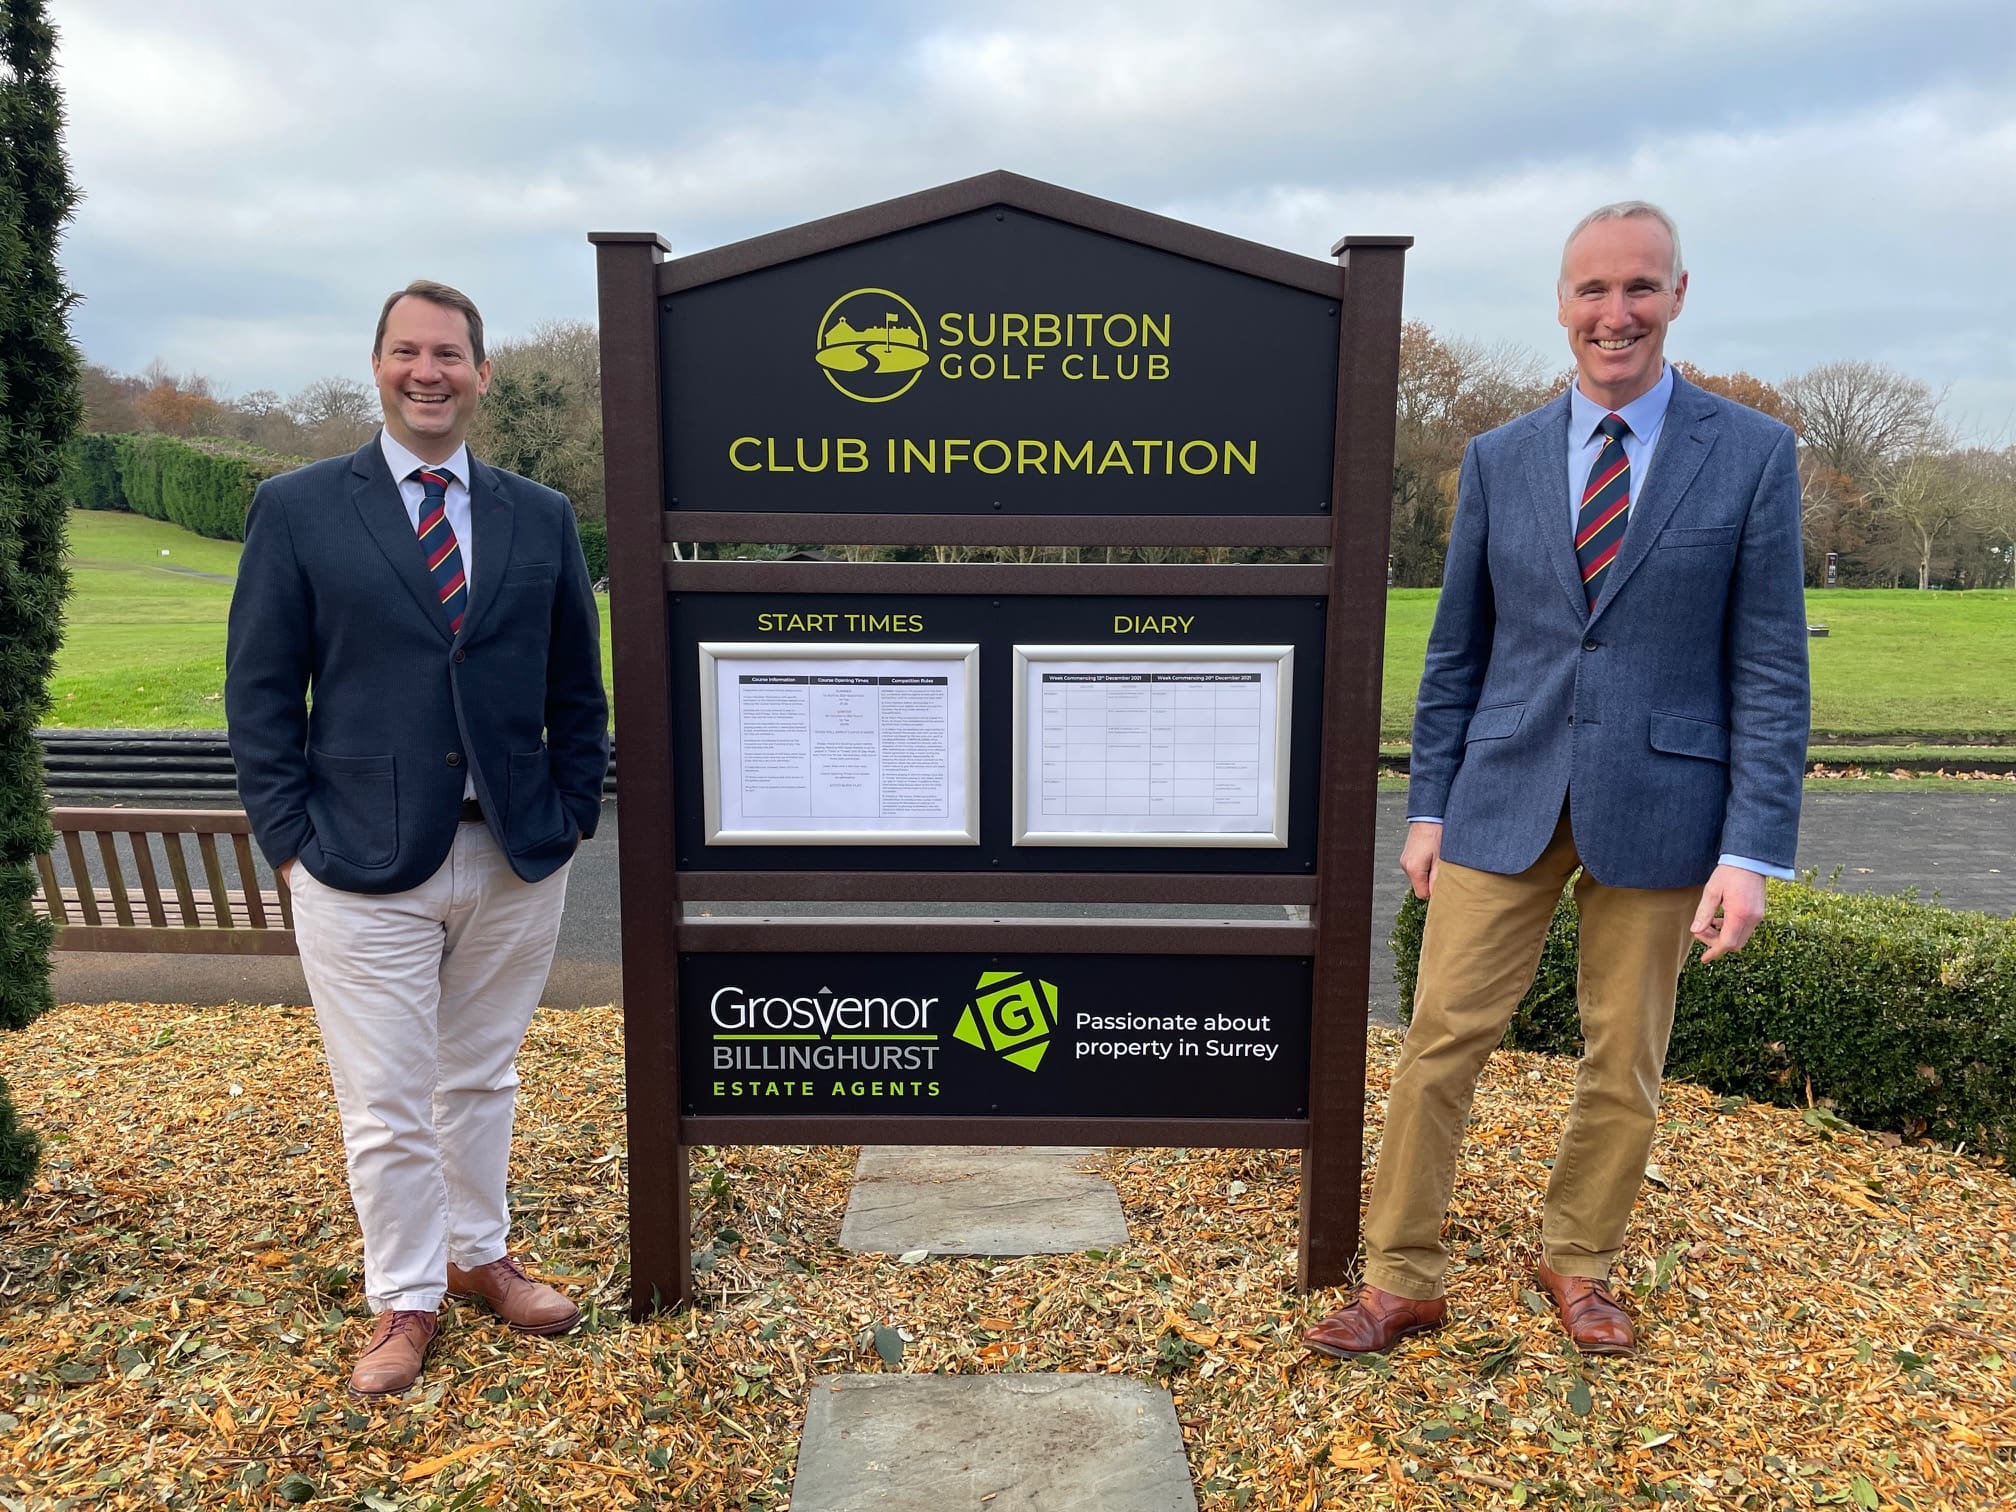 grosvenor has agreed to sponsor surbiton golf club